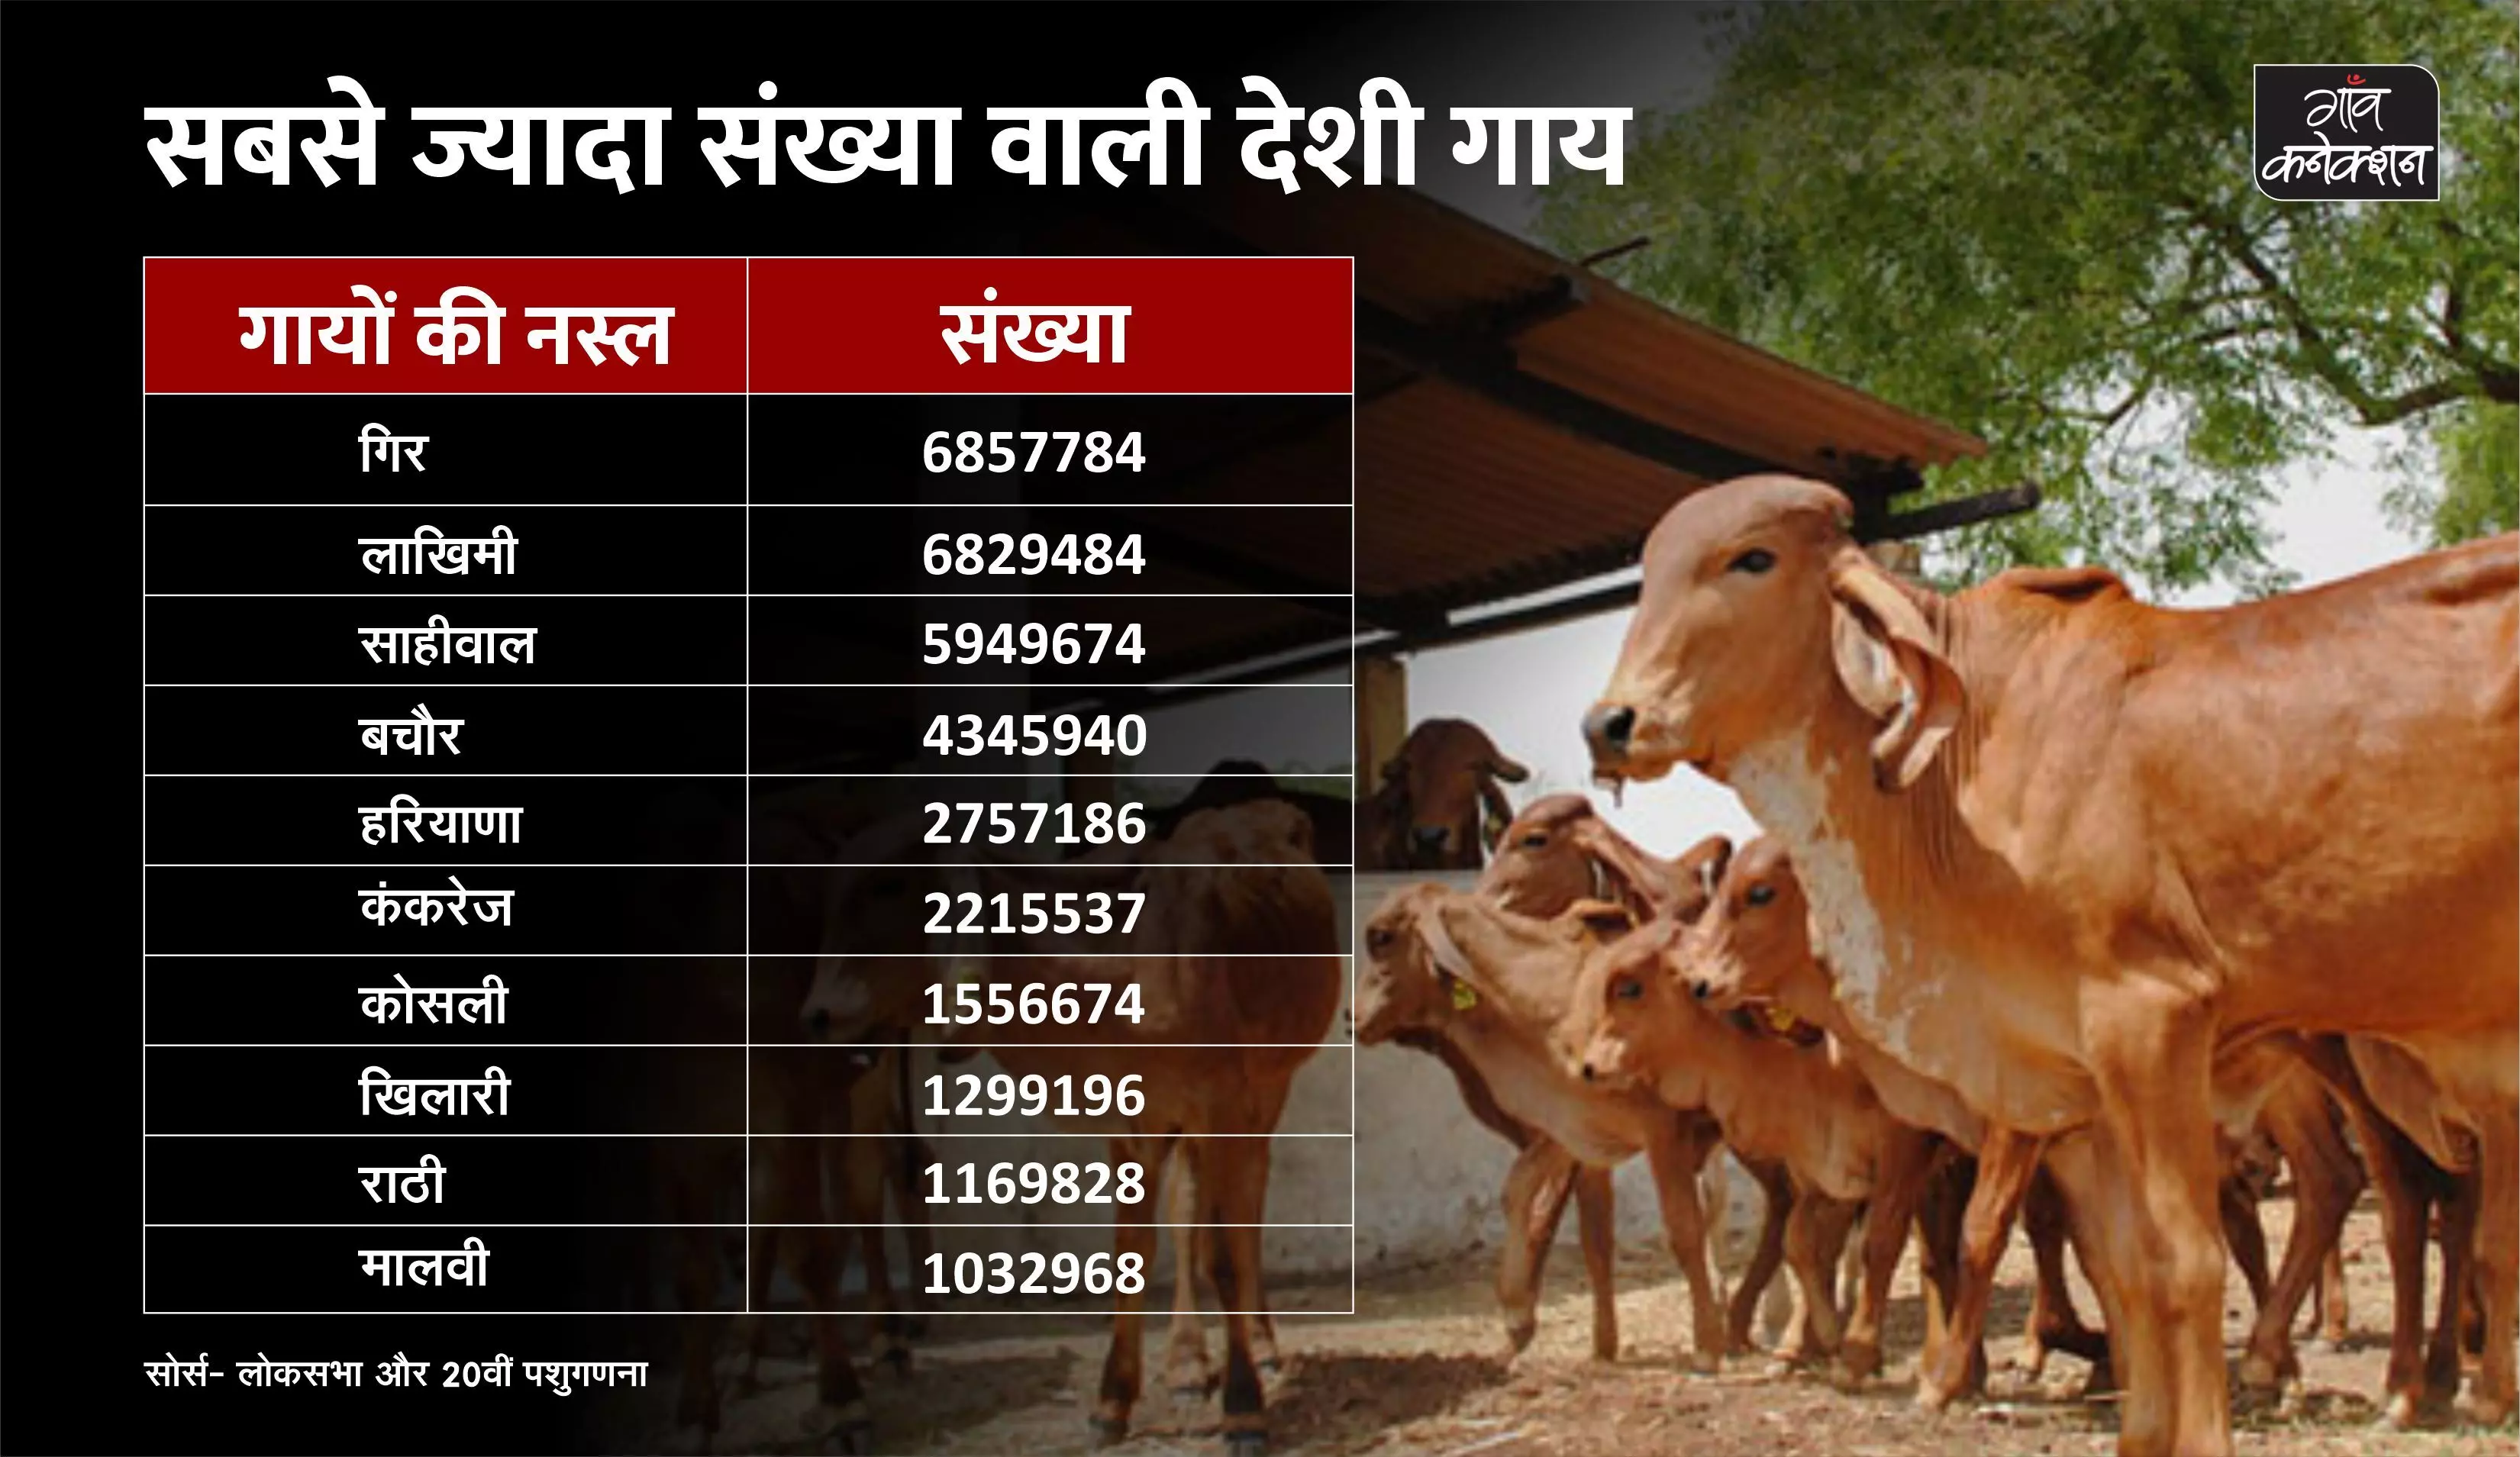 ये हैं भारत में पाई जाने वाले गायों की 50 देसी नस्लें, जानिए गिर,साहीवाल या सिंधी में किसकी संख्या है ज्यादा